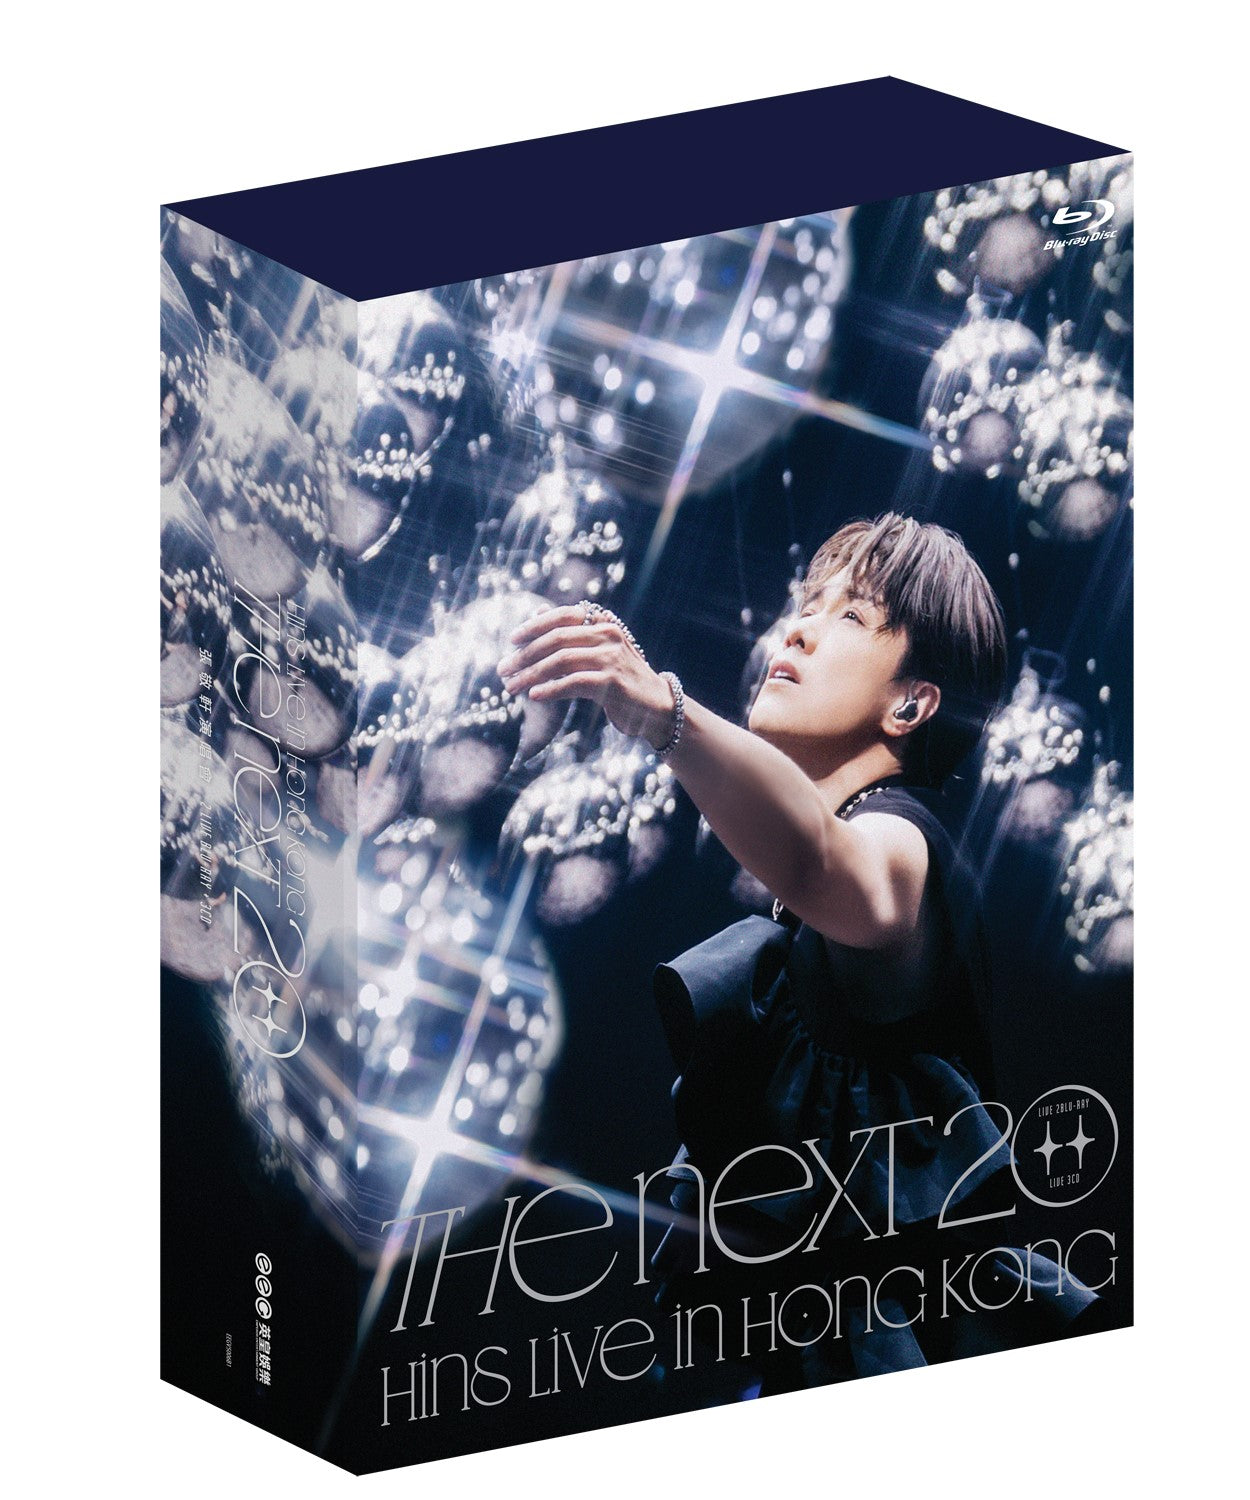 (預售產品 Pre-order) 張敬軒演唱會 TheNext20 Blu-ray大碟 The Next 20 Hins Live in Hong Kong 2Blu-ray+3CD